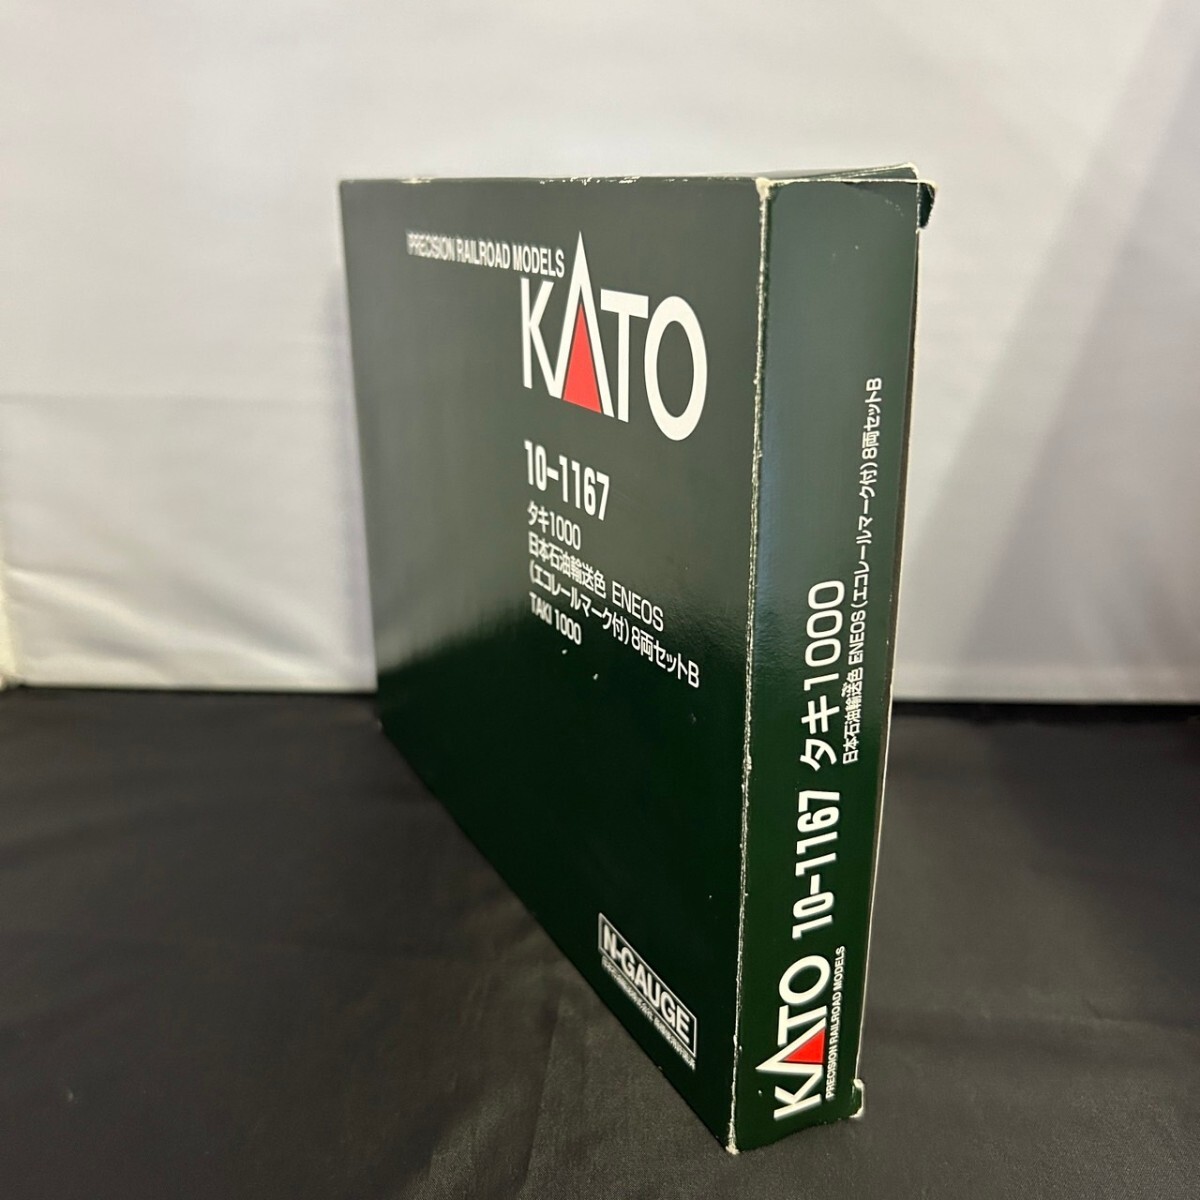 KATO Kato 10-1167taki1000 Япония керосин перевозка цвет ENEOS( eko направляющие Mark есть ) 8 обе комплект B N-GAUGE N gauge 